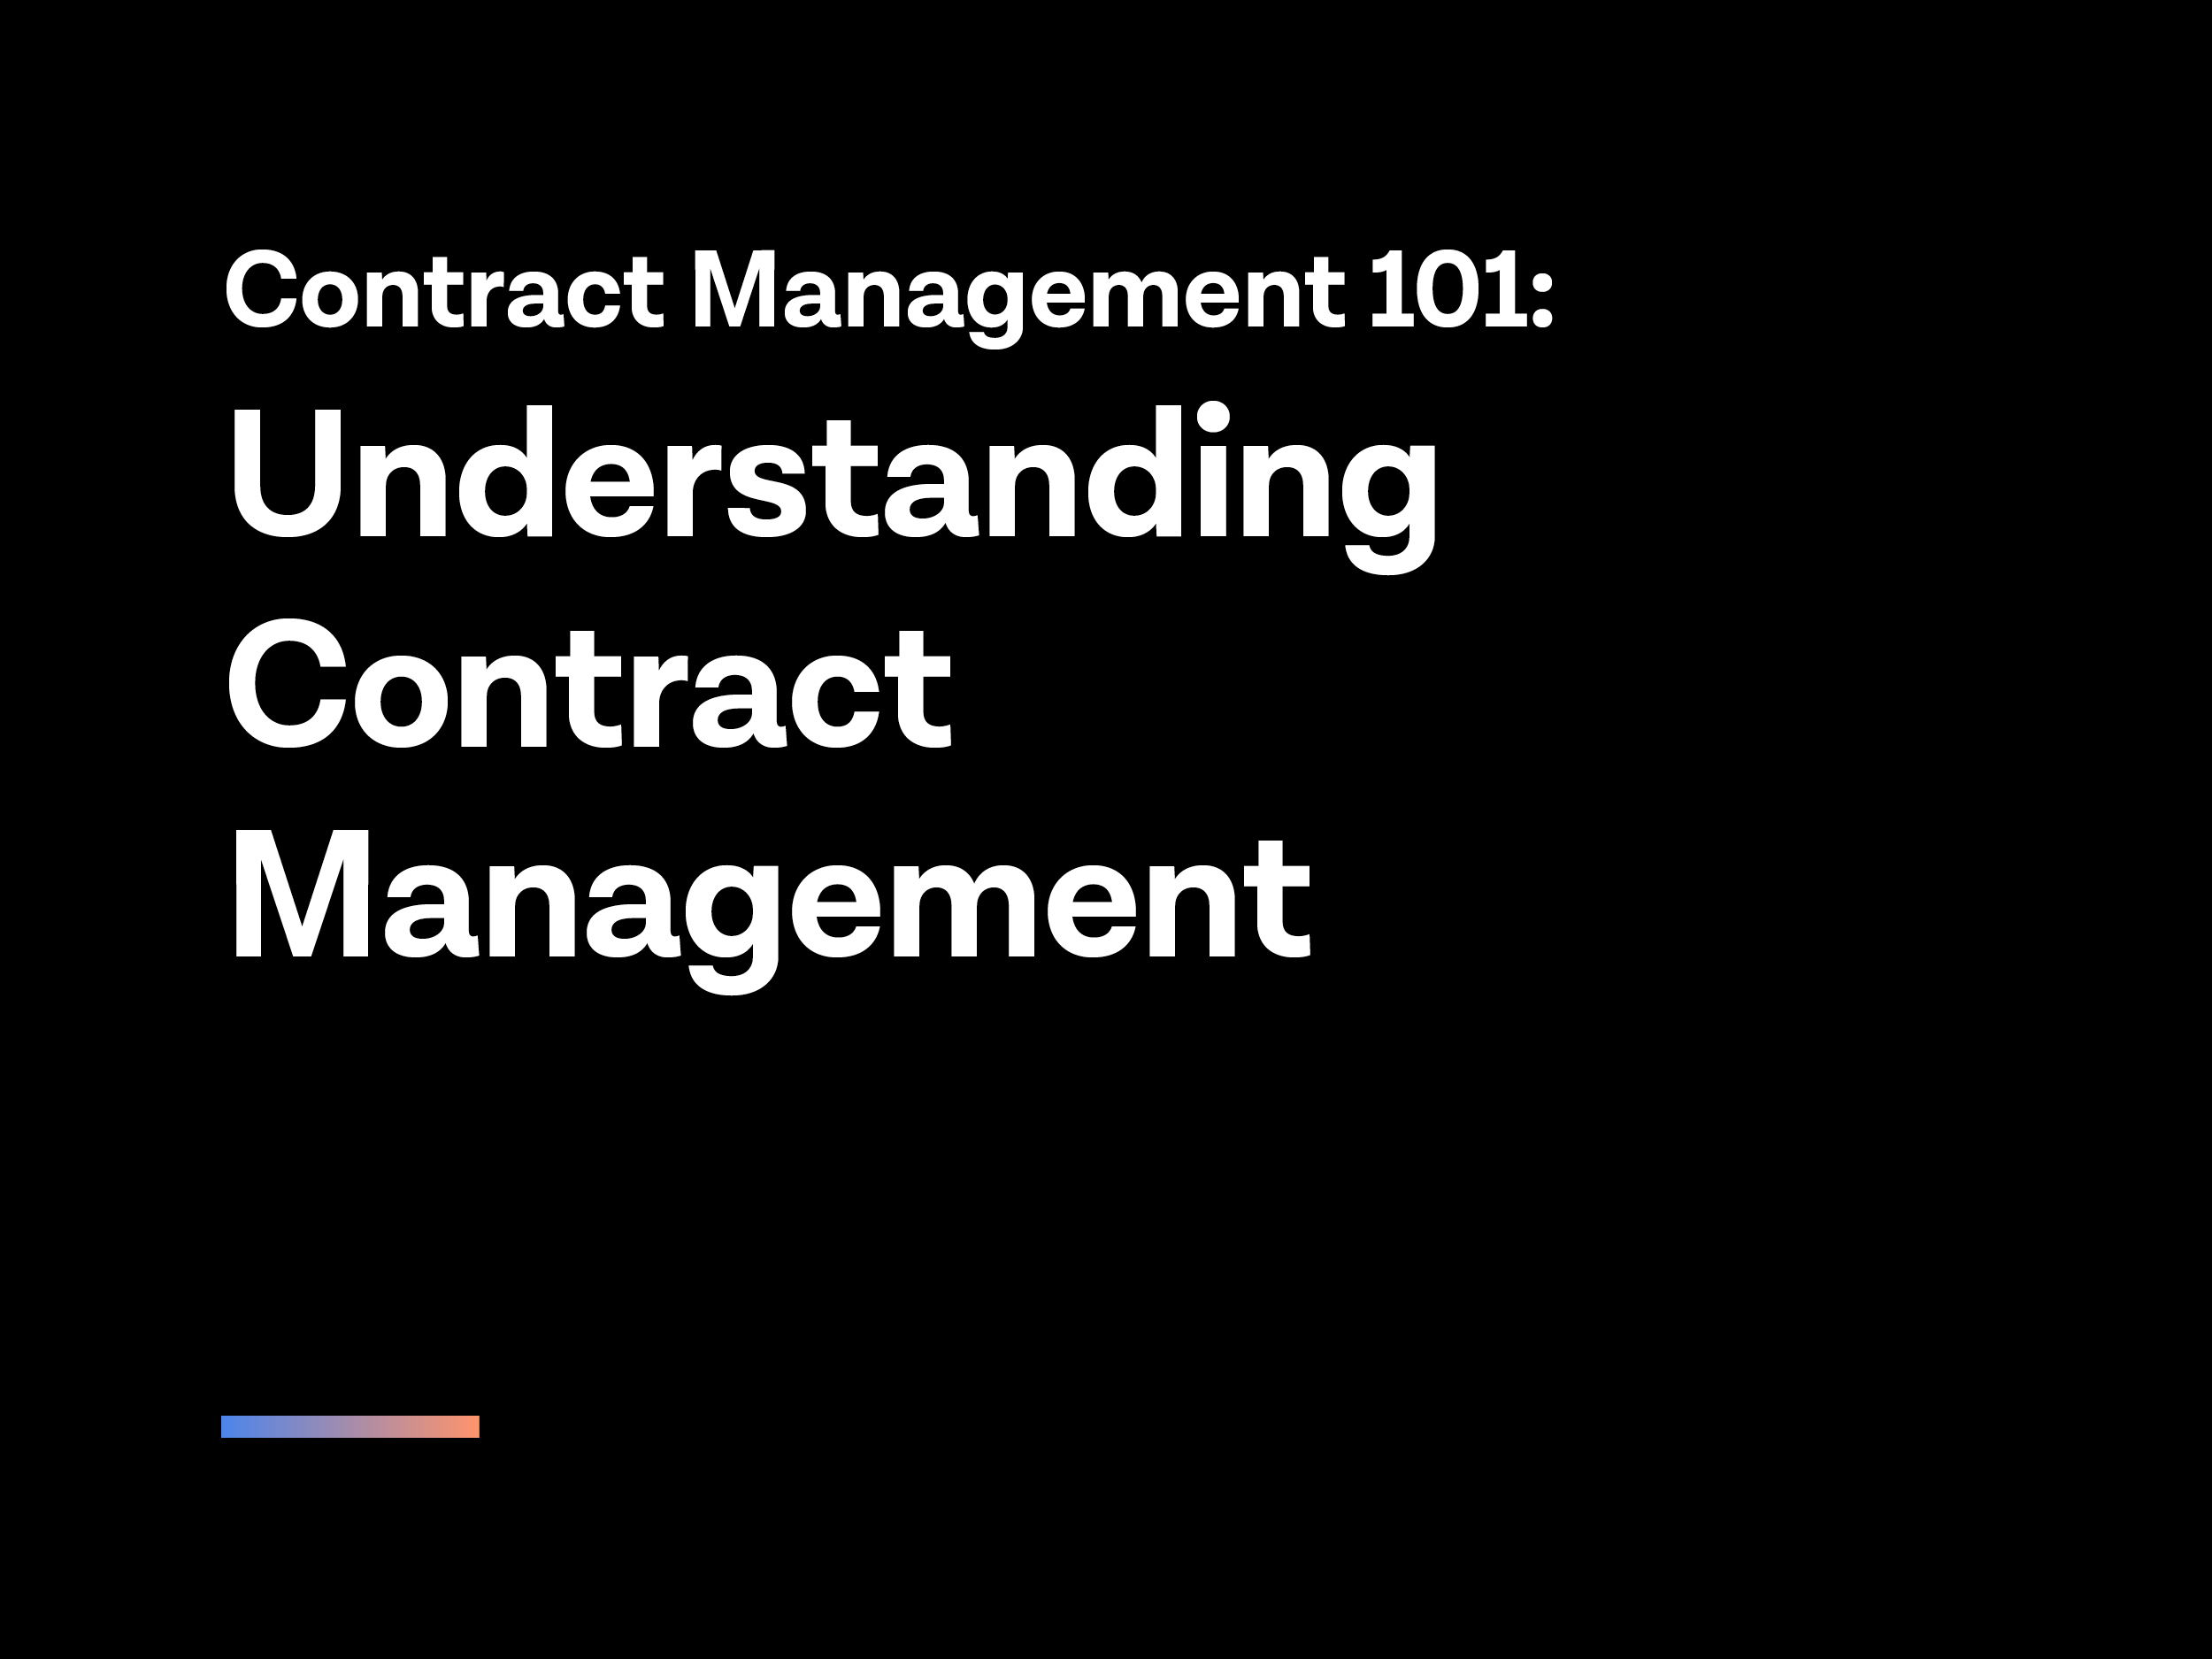 C365-ebook-contract-management-101-understanding-contract-management